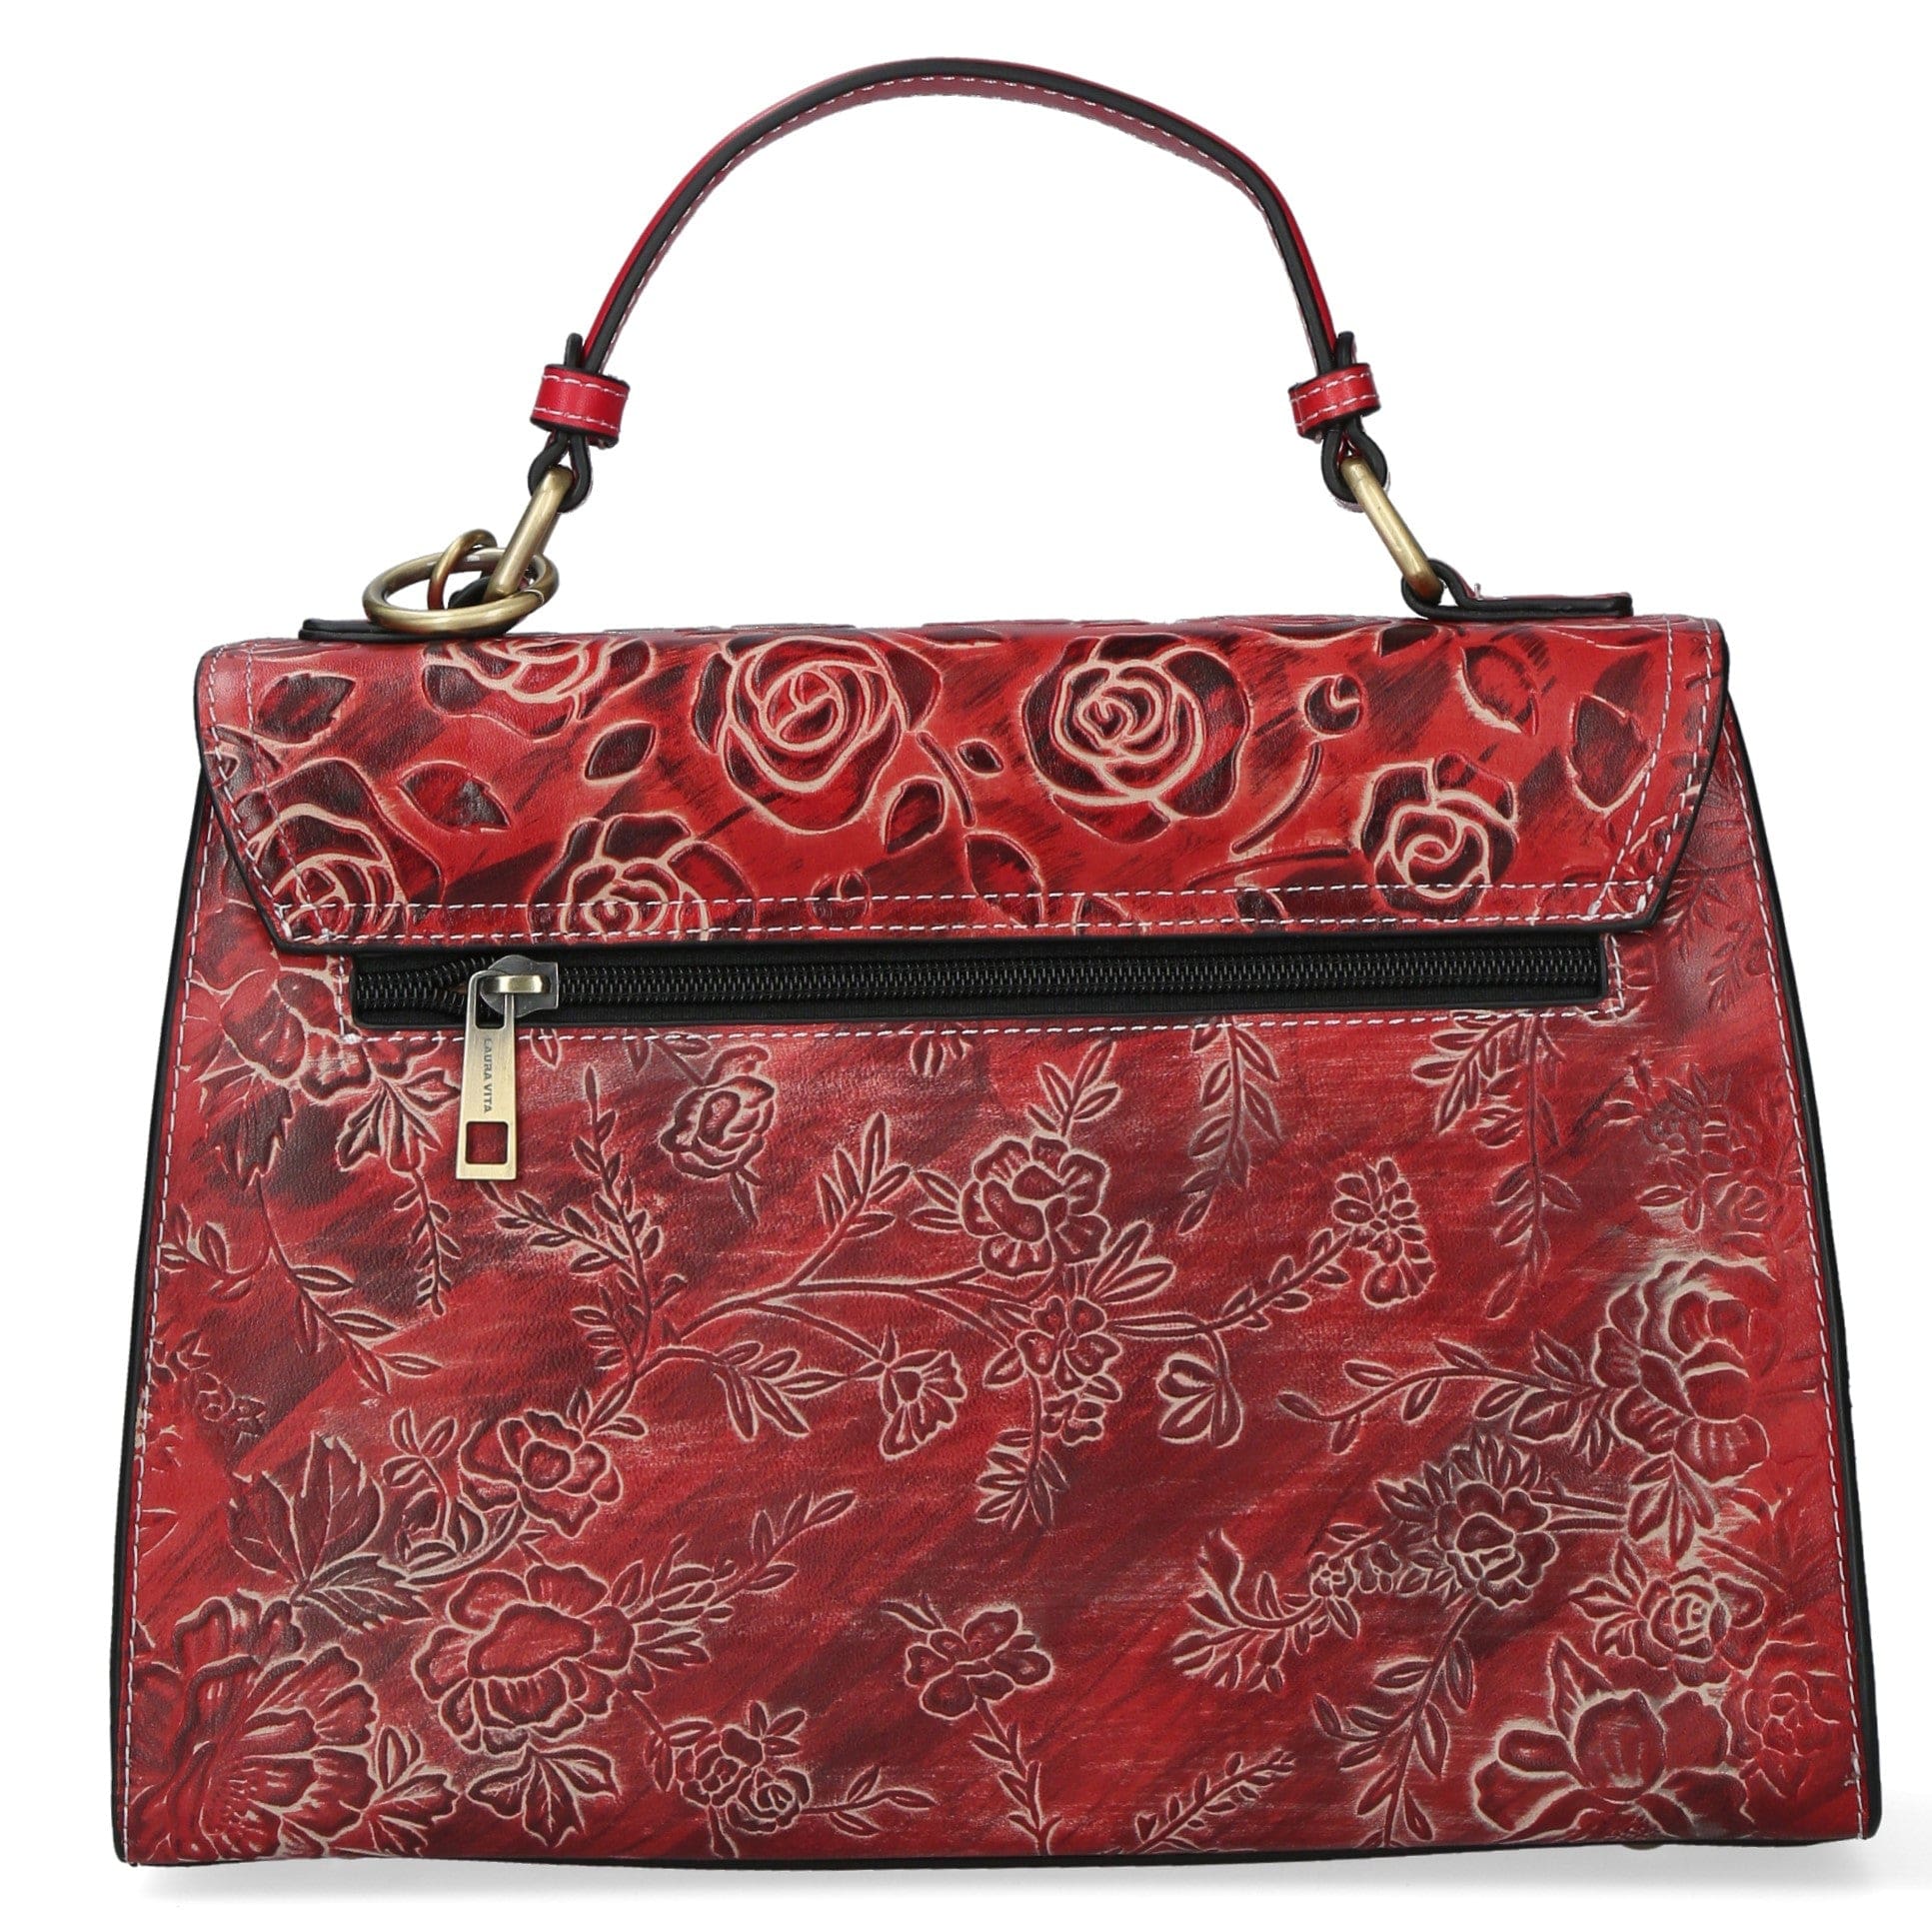 Leather Handbag 4231A - Bag